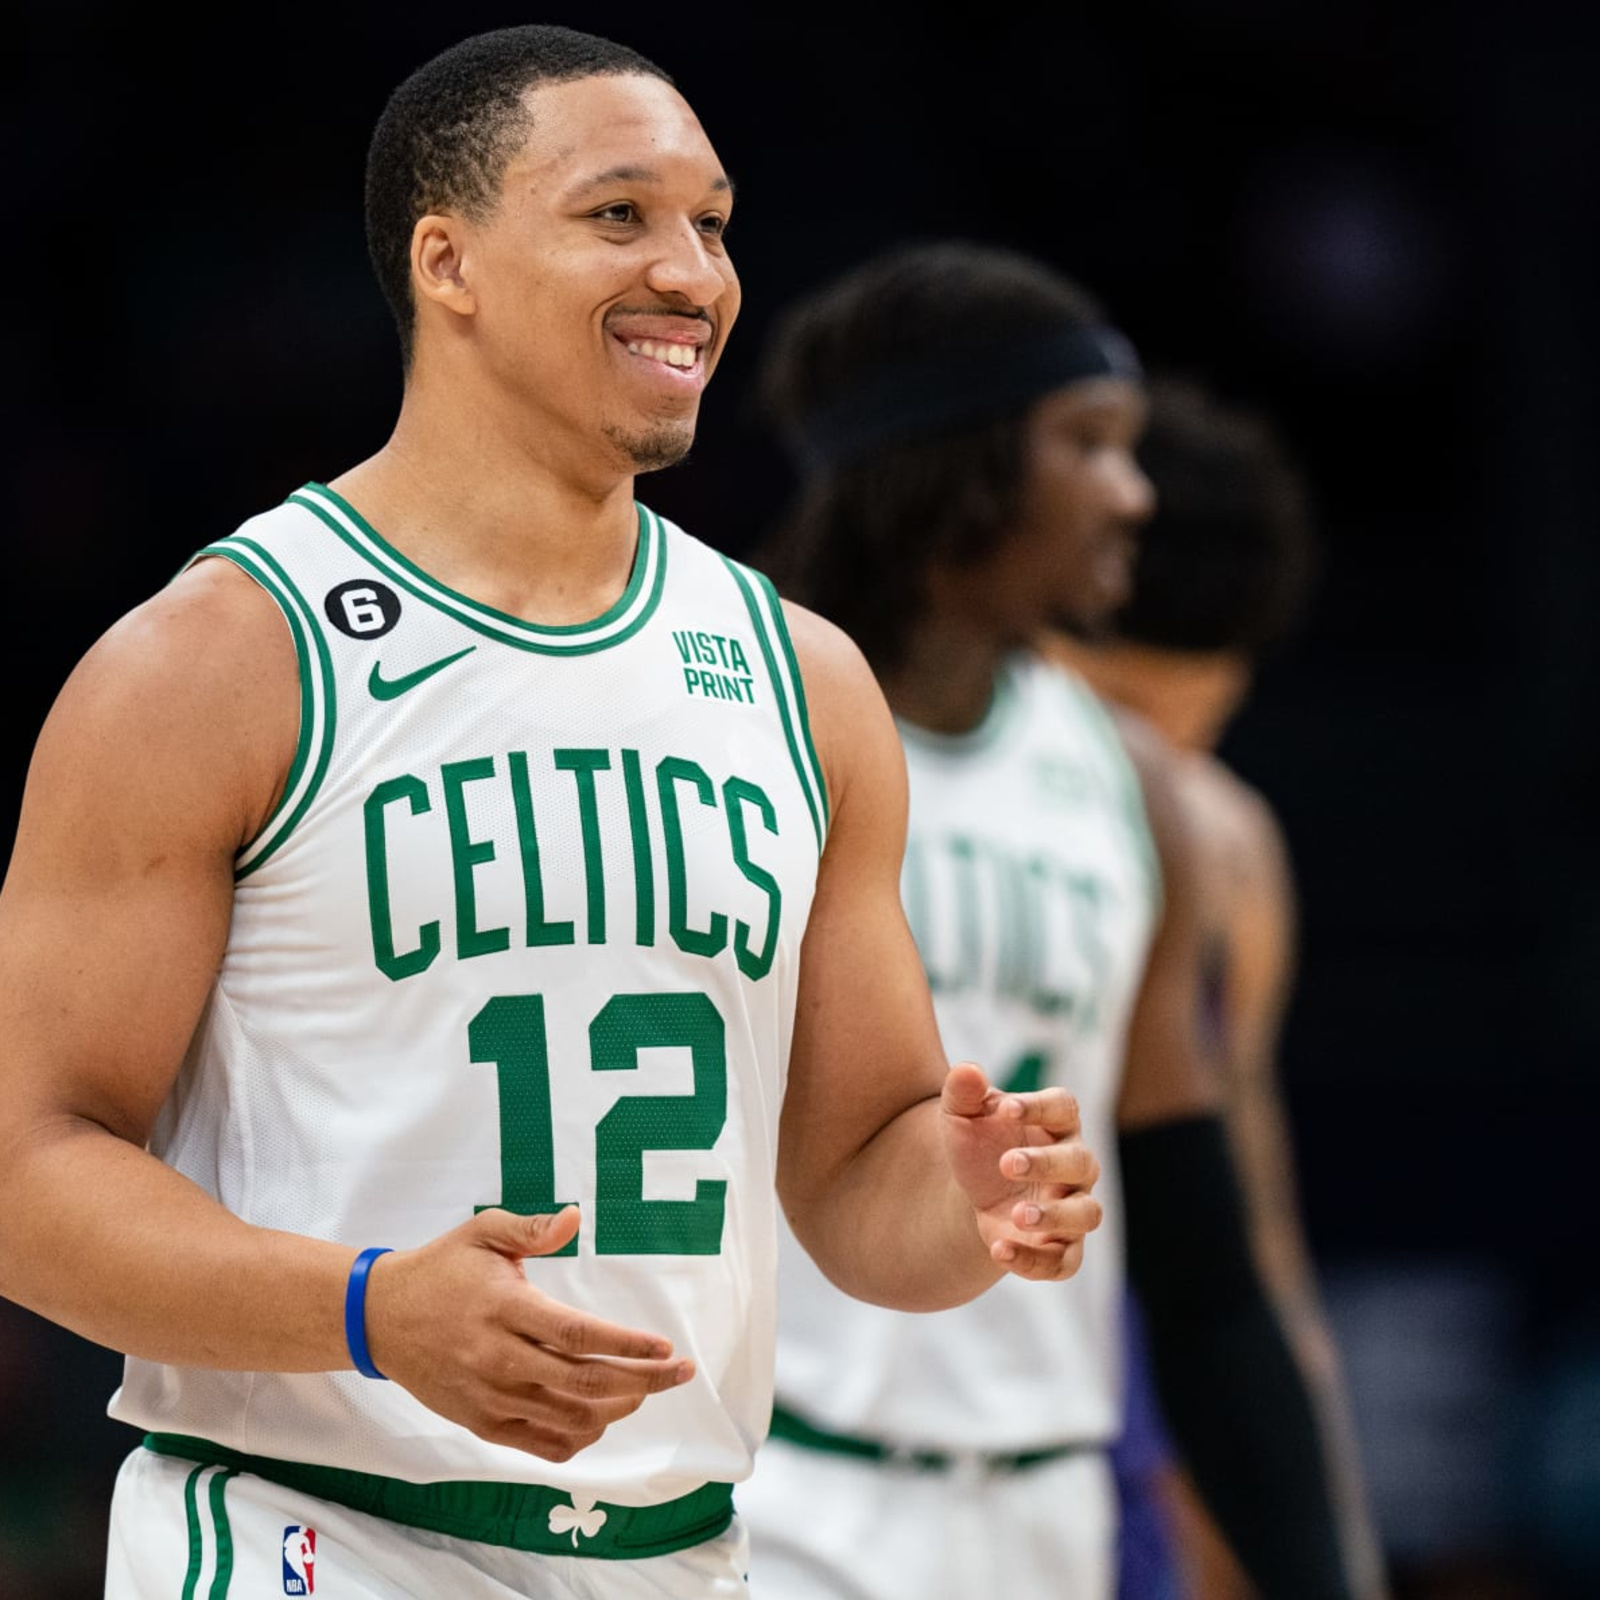 Celtics' Williams undergoes hand surgery